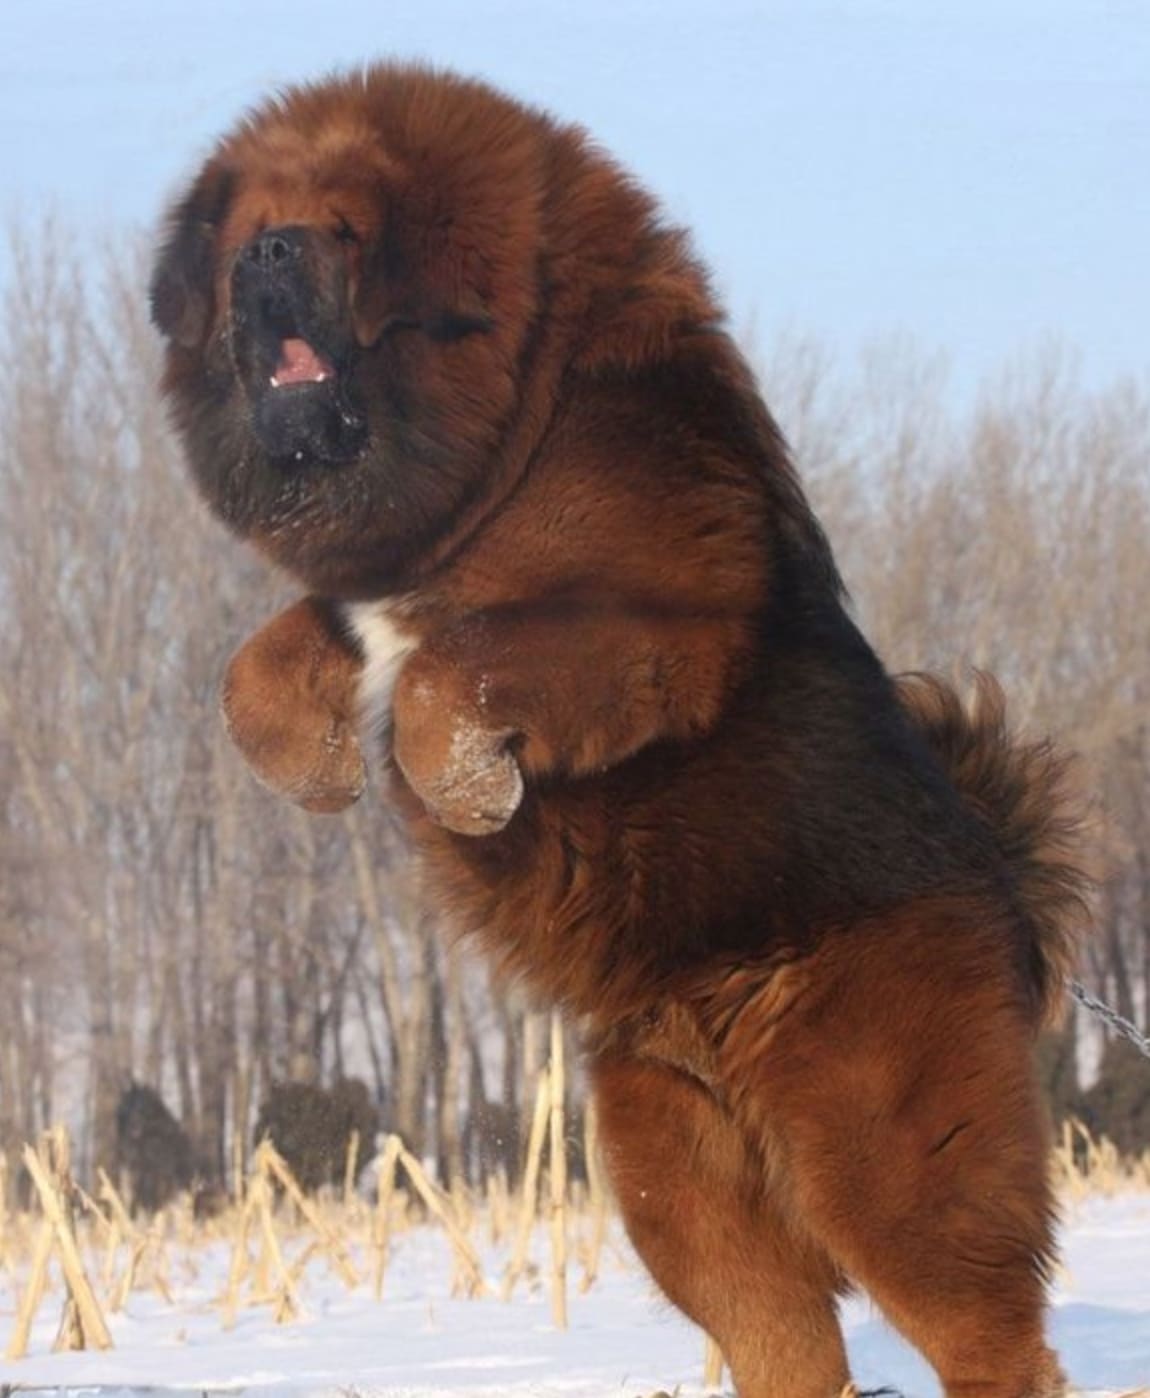 チベタン・マスティフの画像検索したら超デカい犬だった
こんなの日本に生息してないだろ！笑